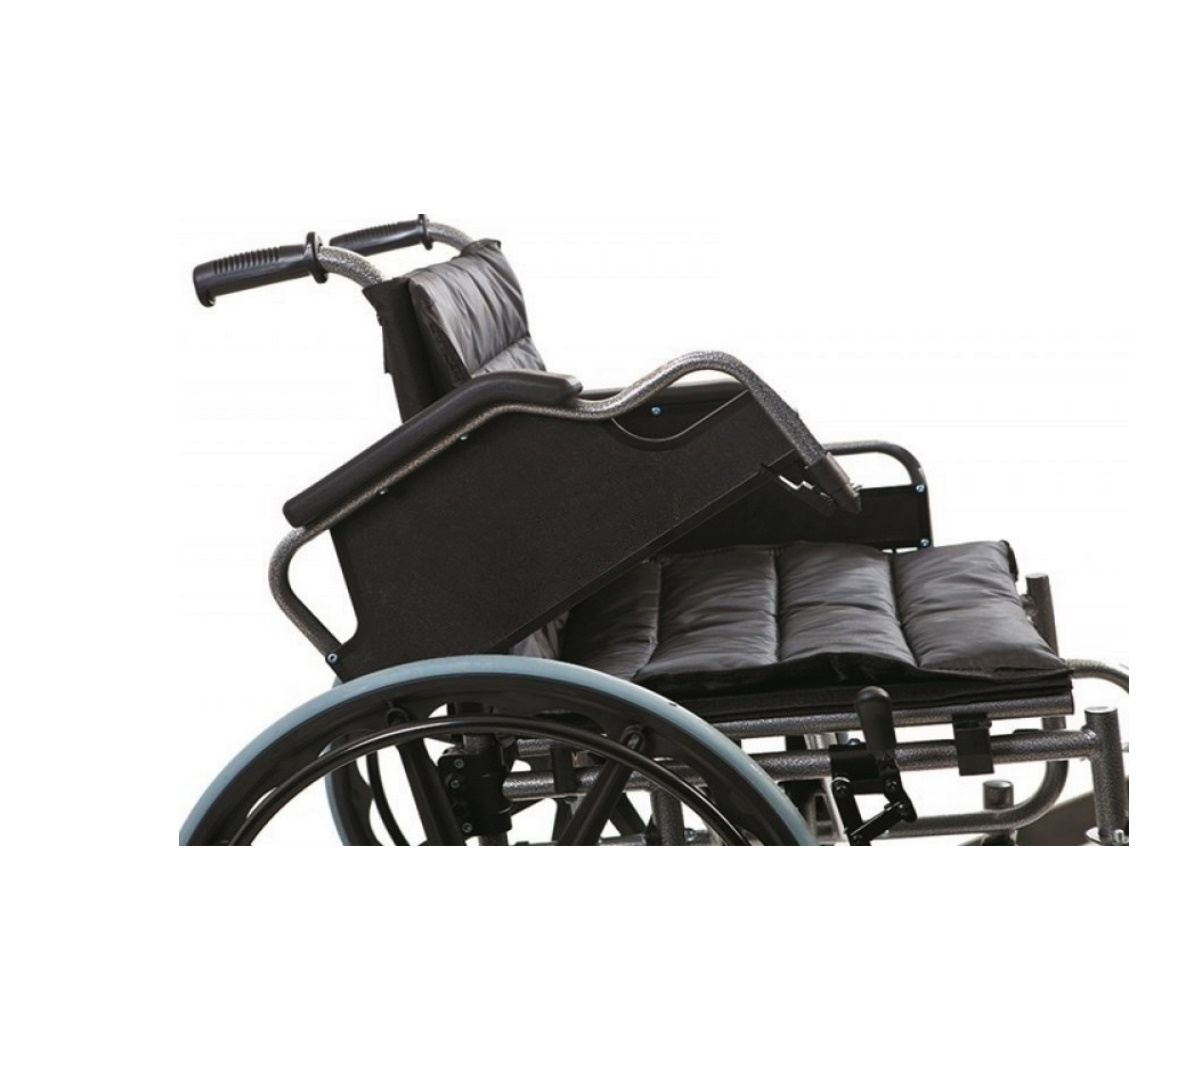 POYLİN | P114 XLarge Beden ( 55 cm ) Tekerlekli Sandalye | Akülü Tekerlekli Sandalye | Tekerlekli Sandalye